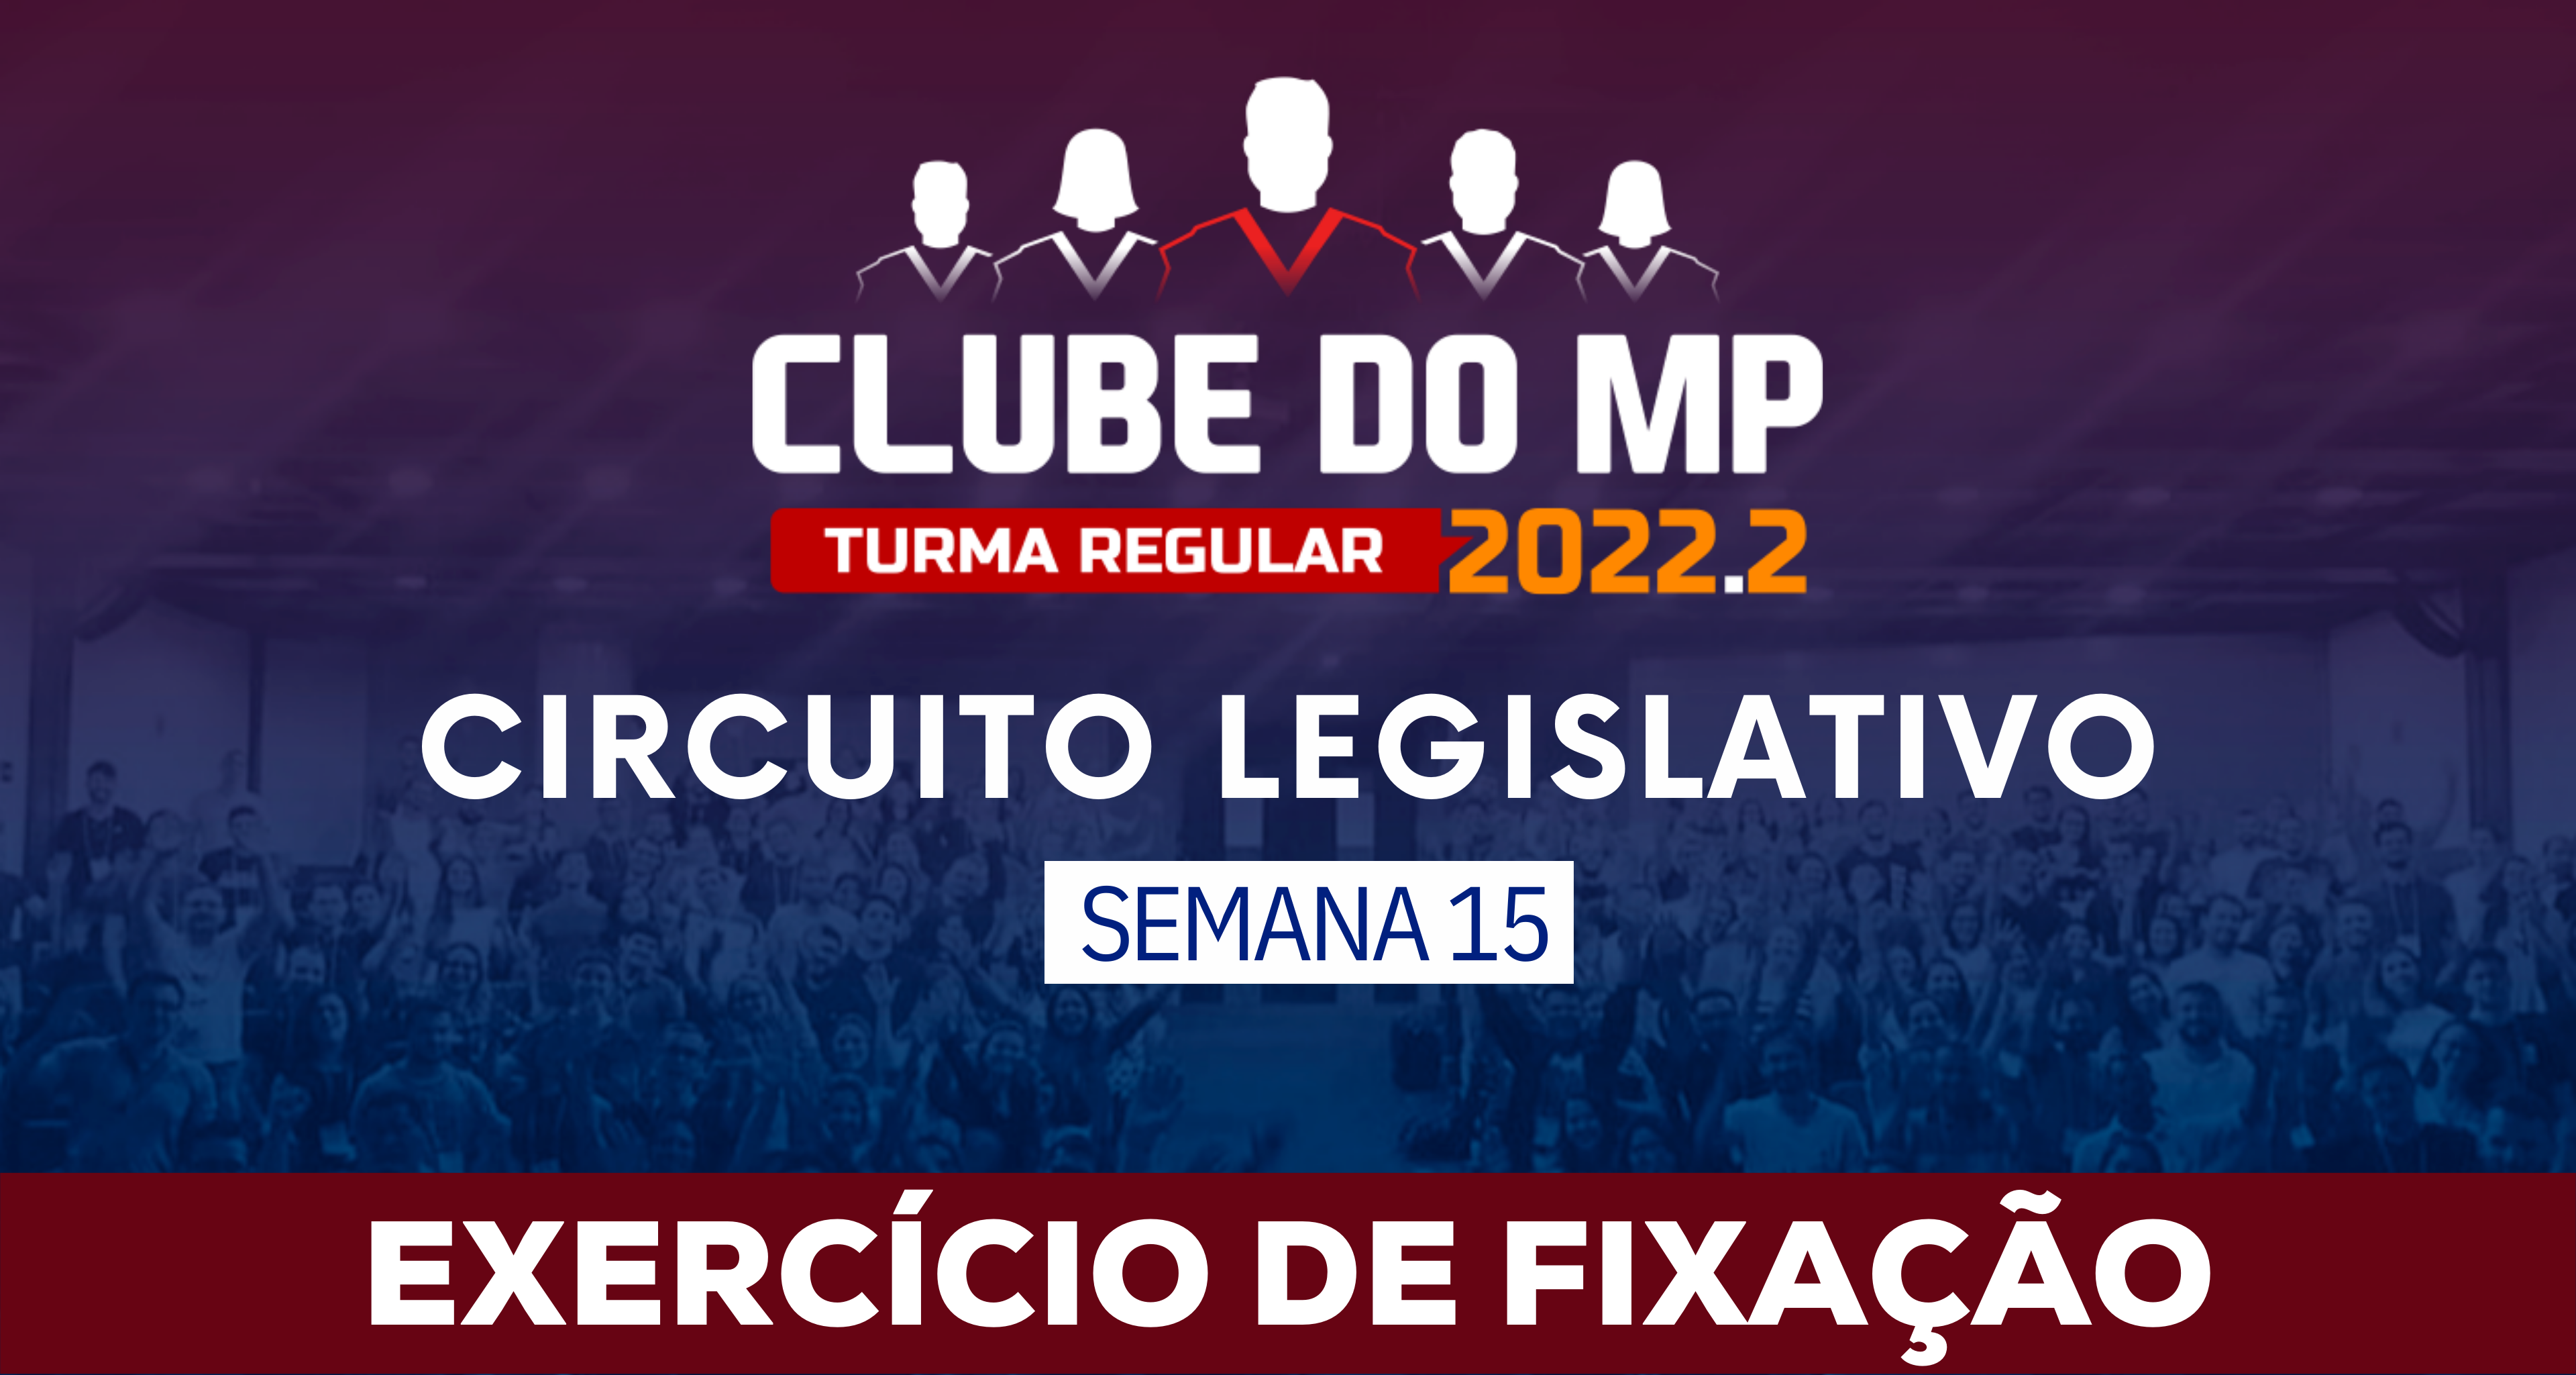 Circuito Legislativo 2022.2 (Clube do MP - Semana 15)